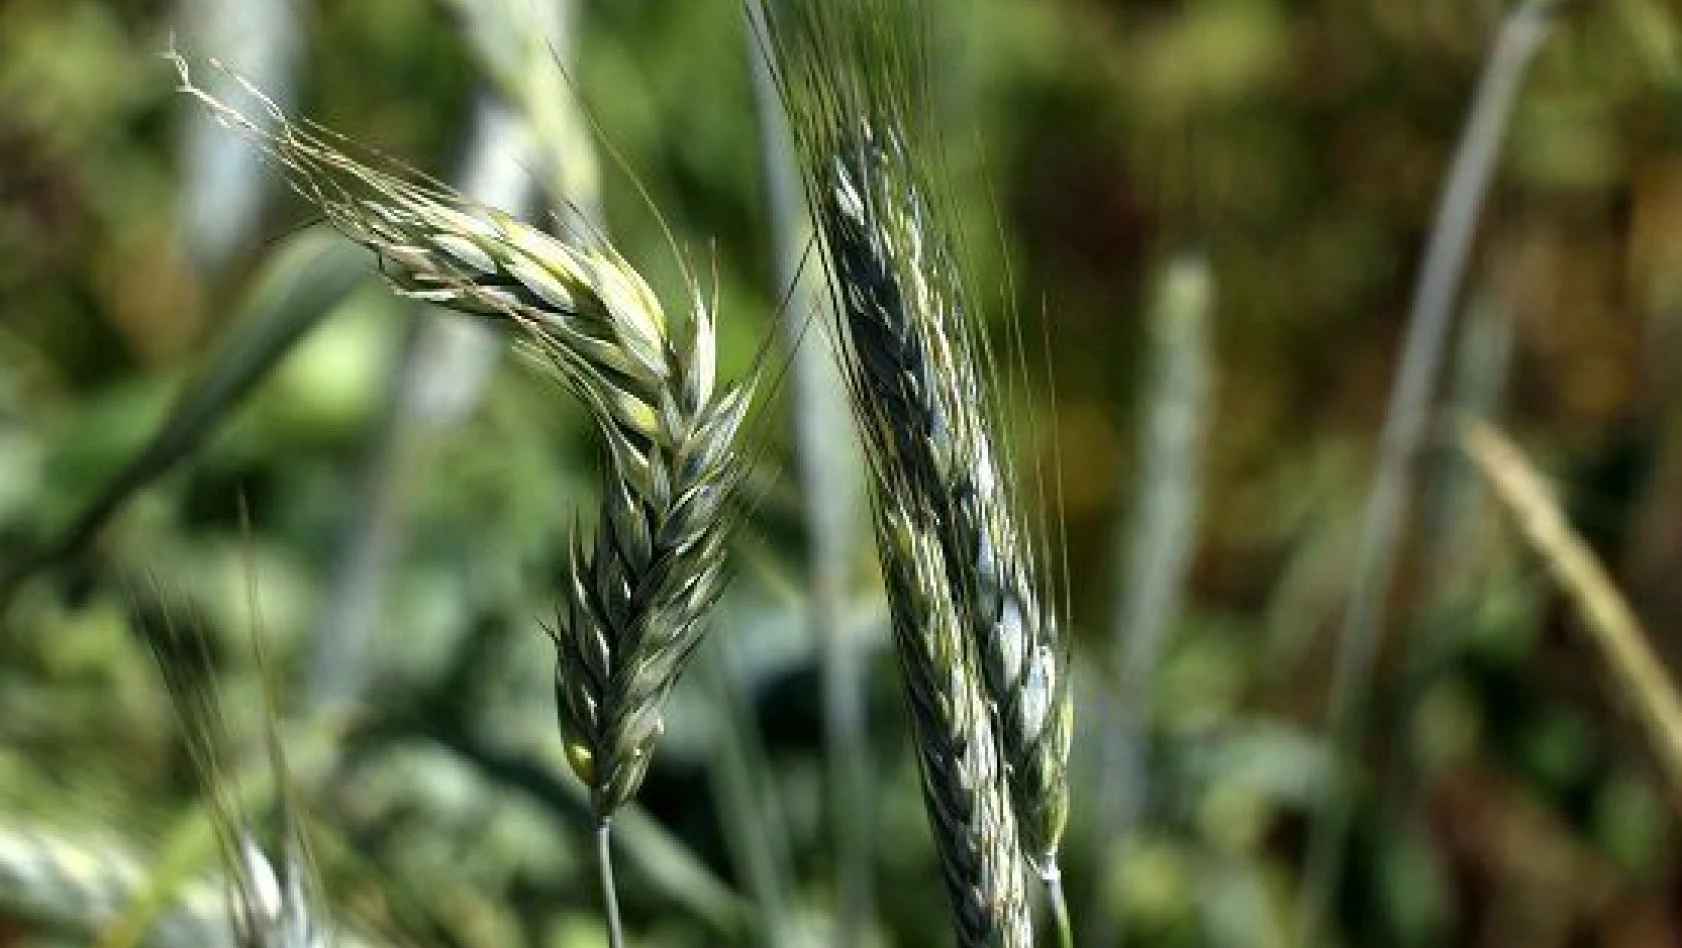 Türk tohumları 80 ülkenin tarım arazilerinde filizleniyor